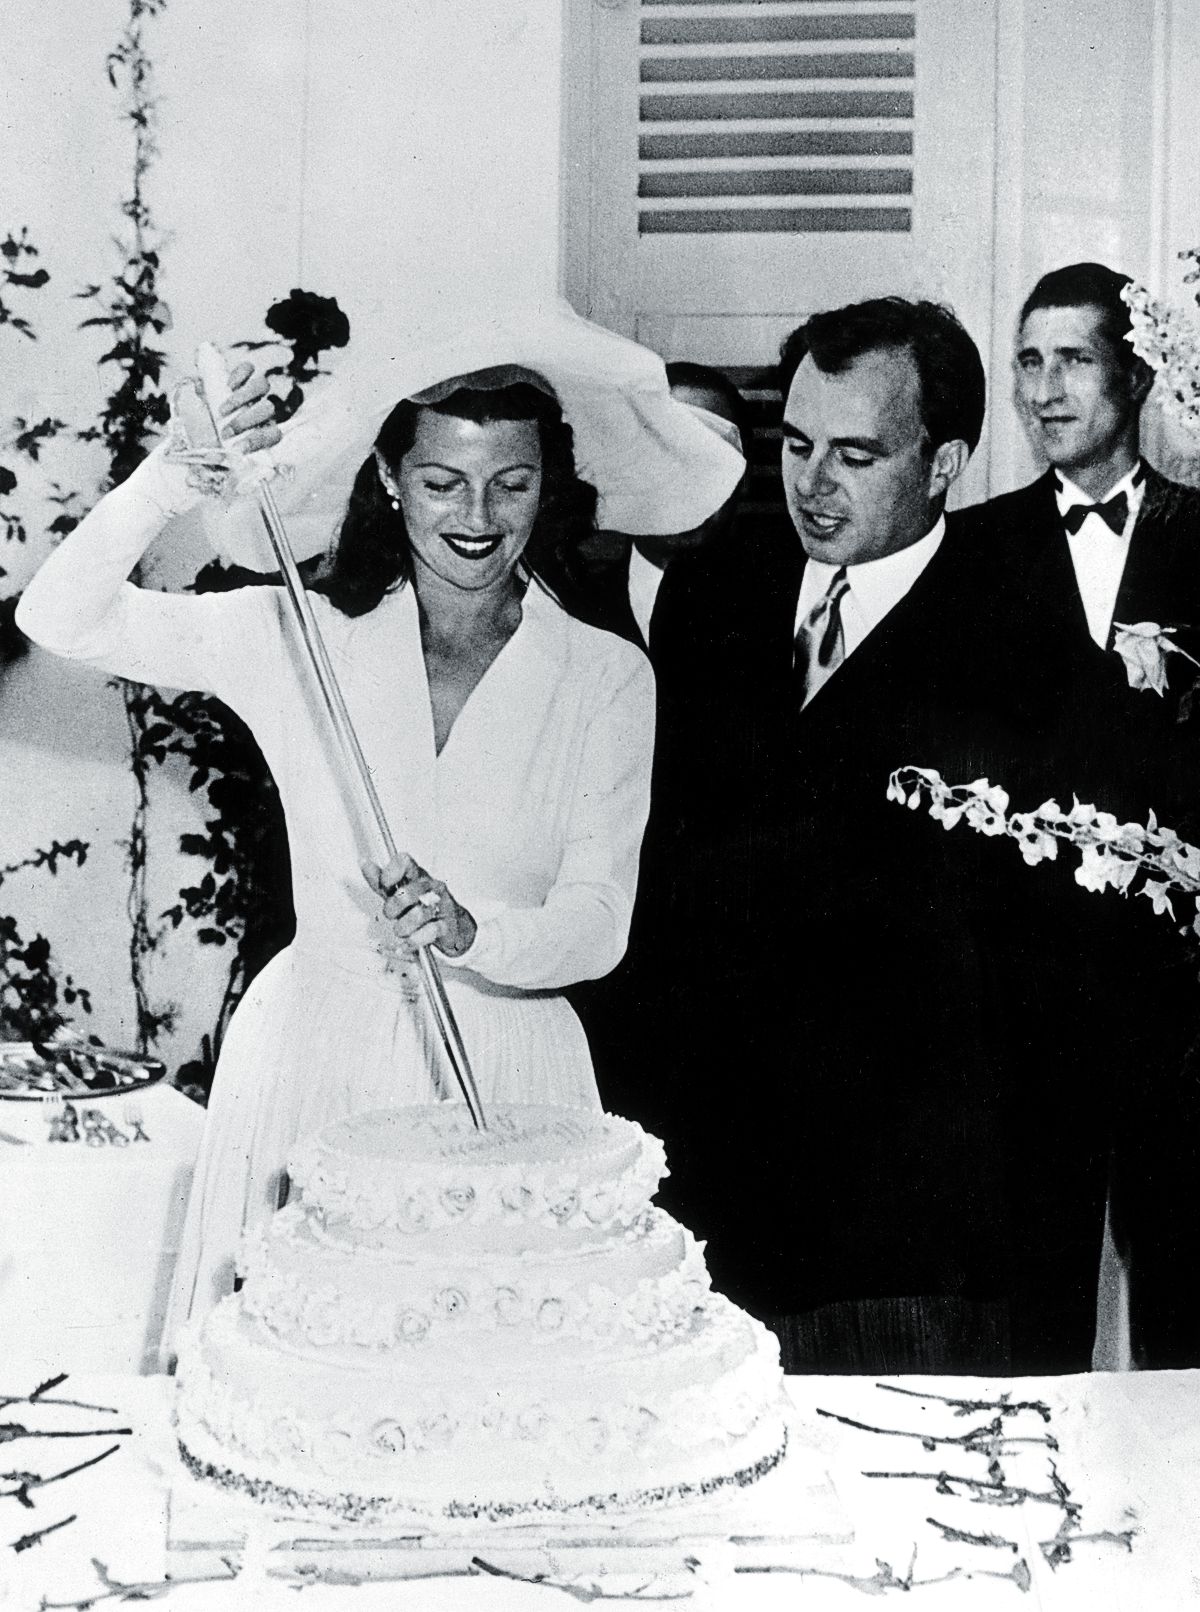 Рита Хейворт со своим мужем принцем Али Ханом разрезают торт в день свадьбы